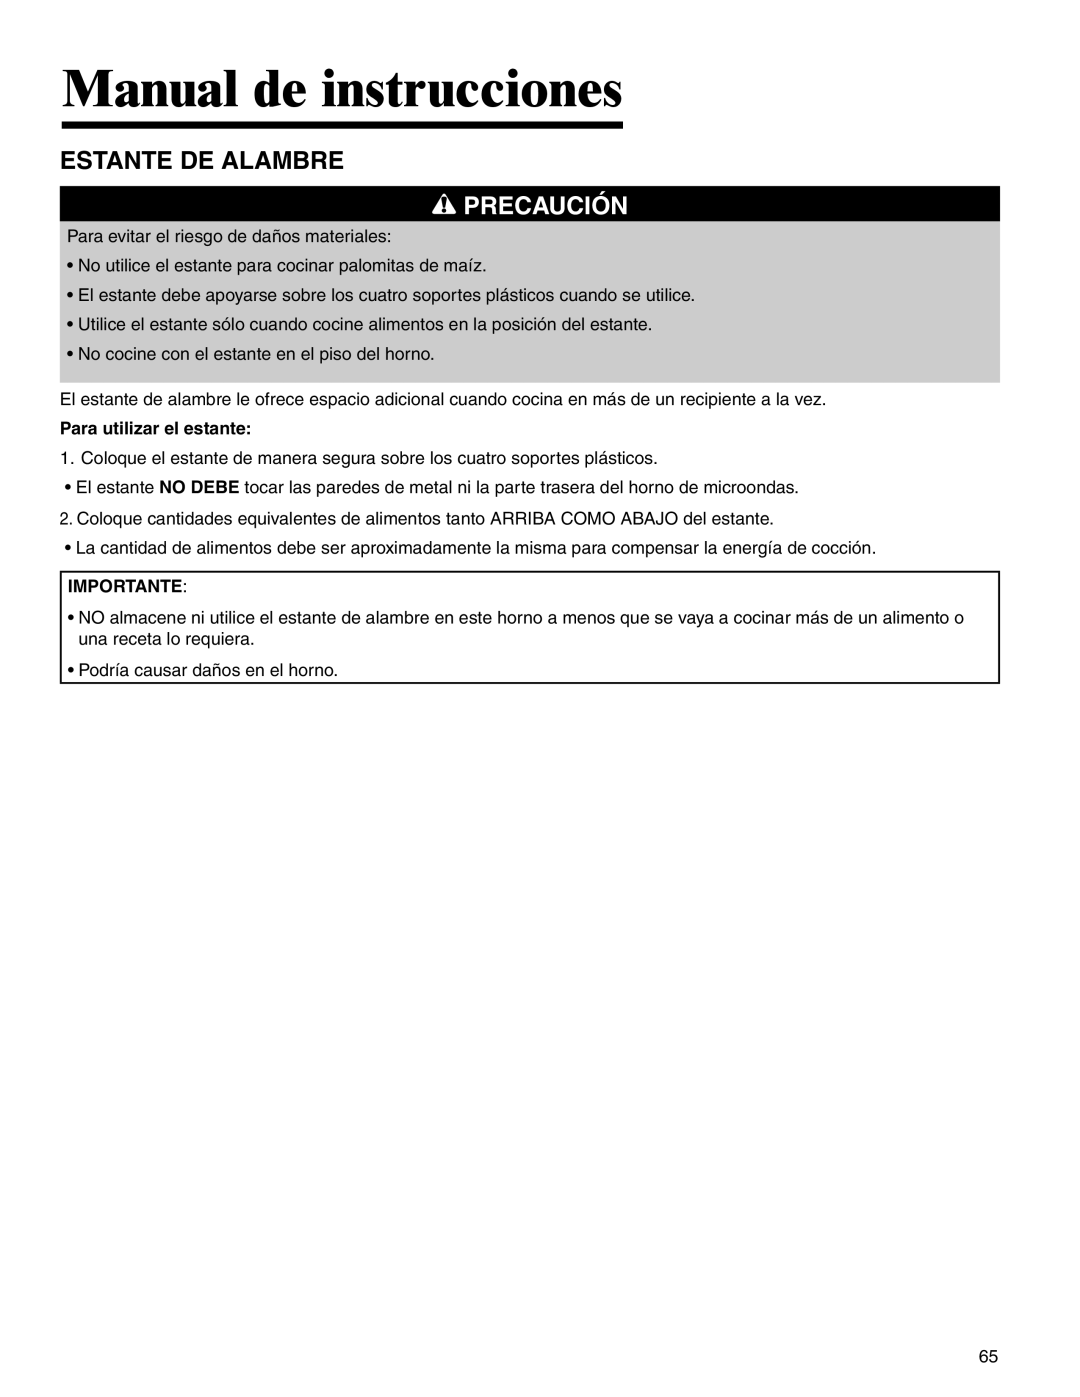 Amana AMV5164BA/BC important safety instructions Estante De Alambre, Manual de instrucciones, Precaución 